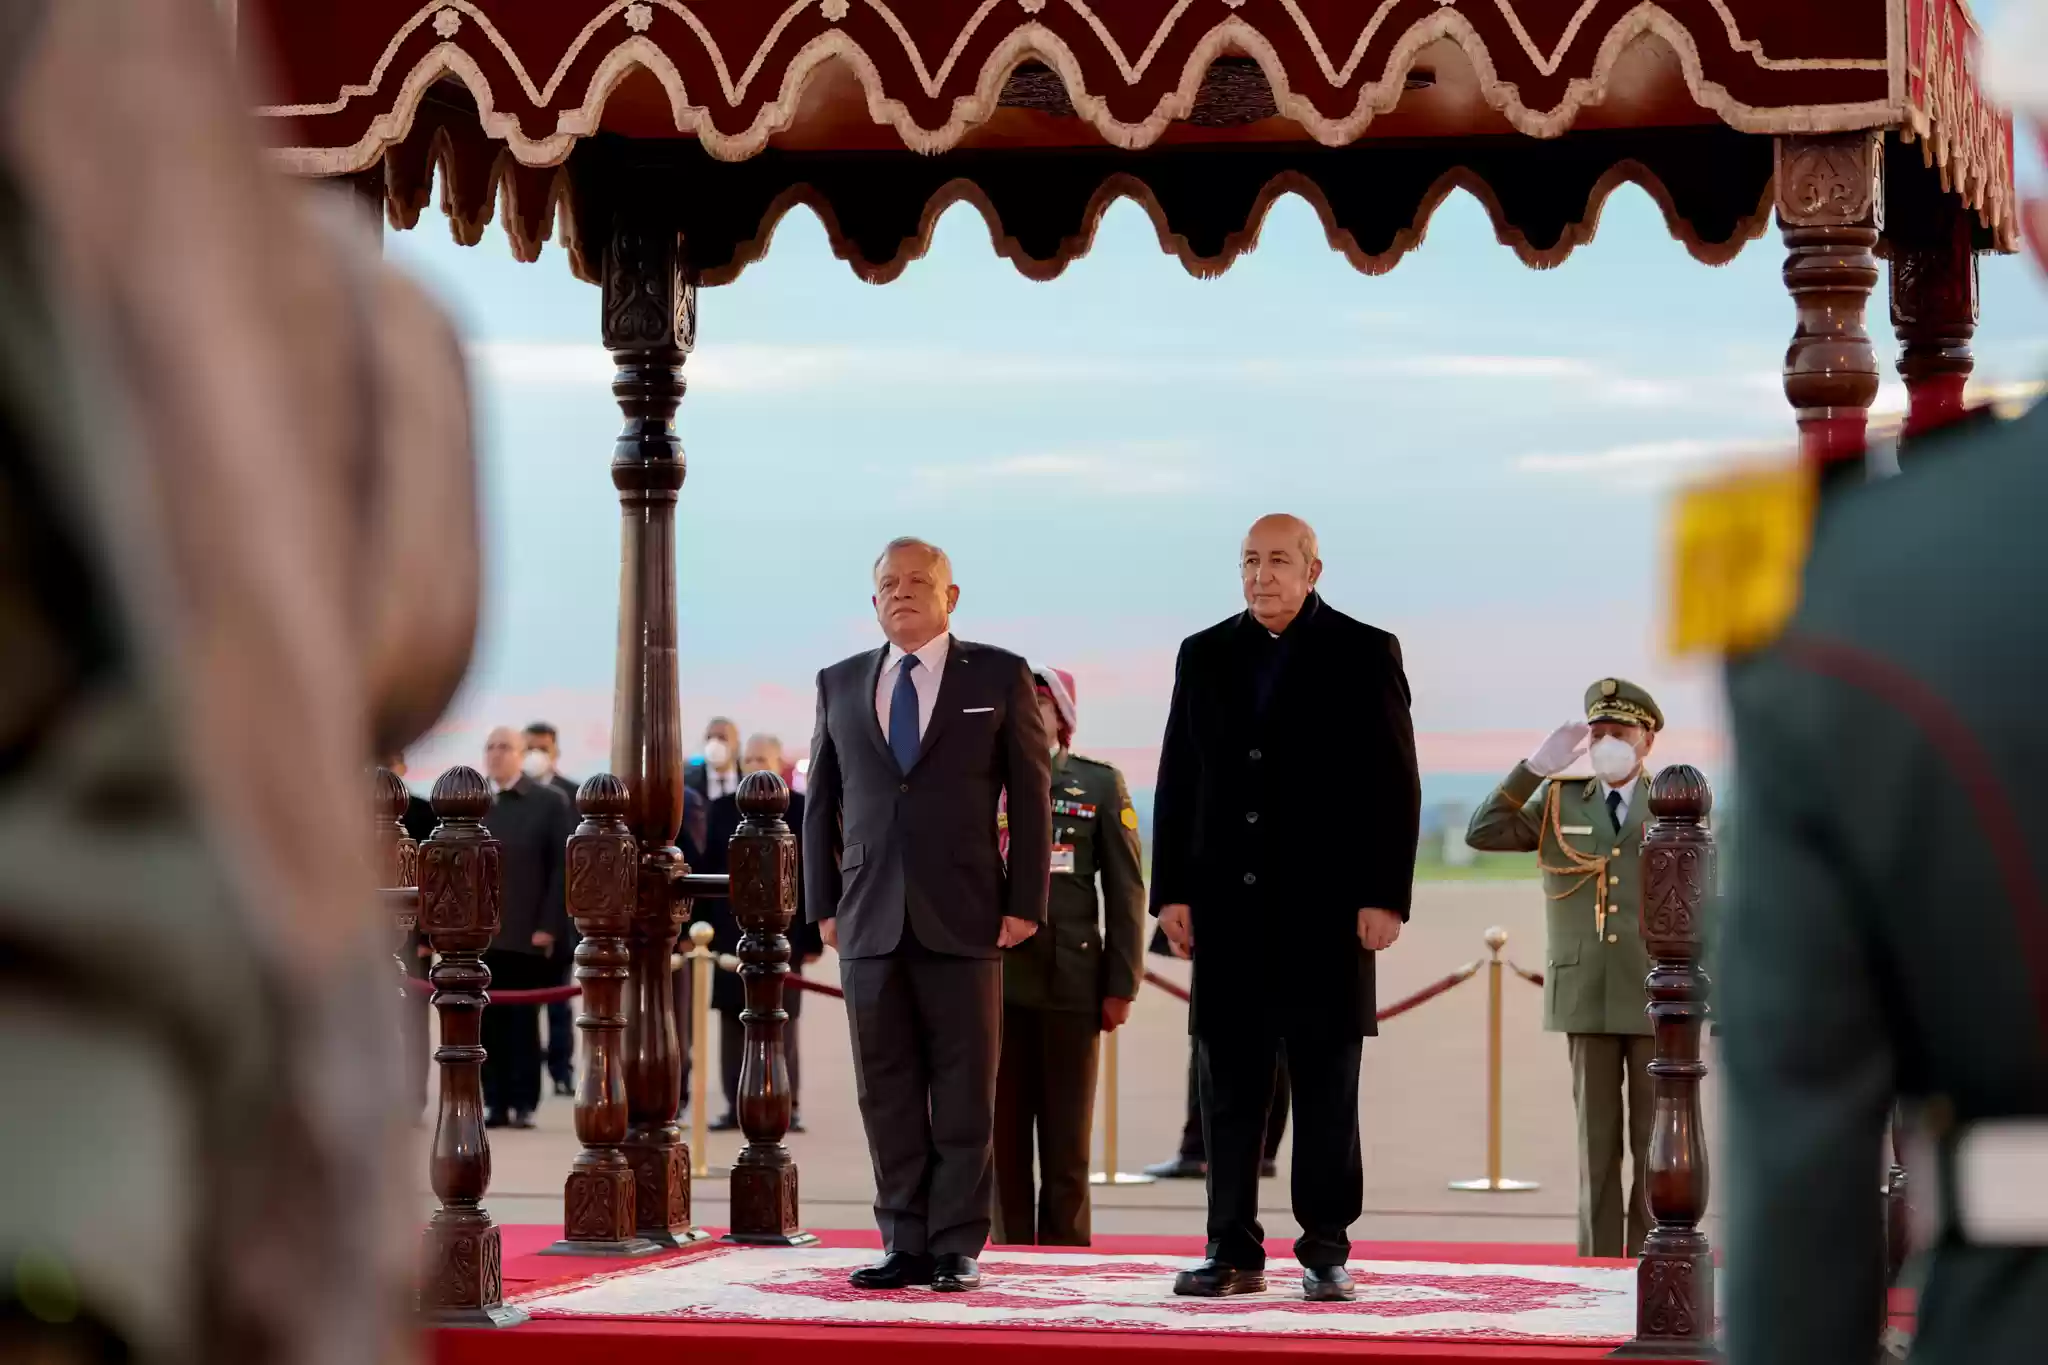 الملك والرئيس الجزائري يتبادلان وسامين رفيعين